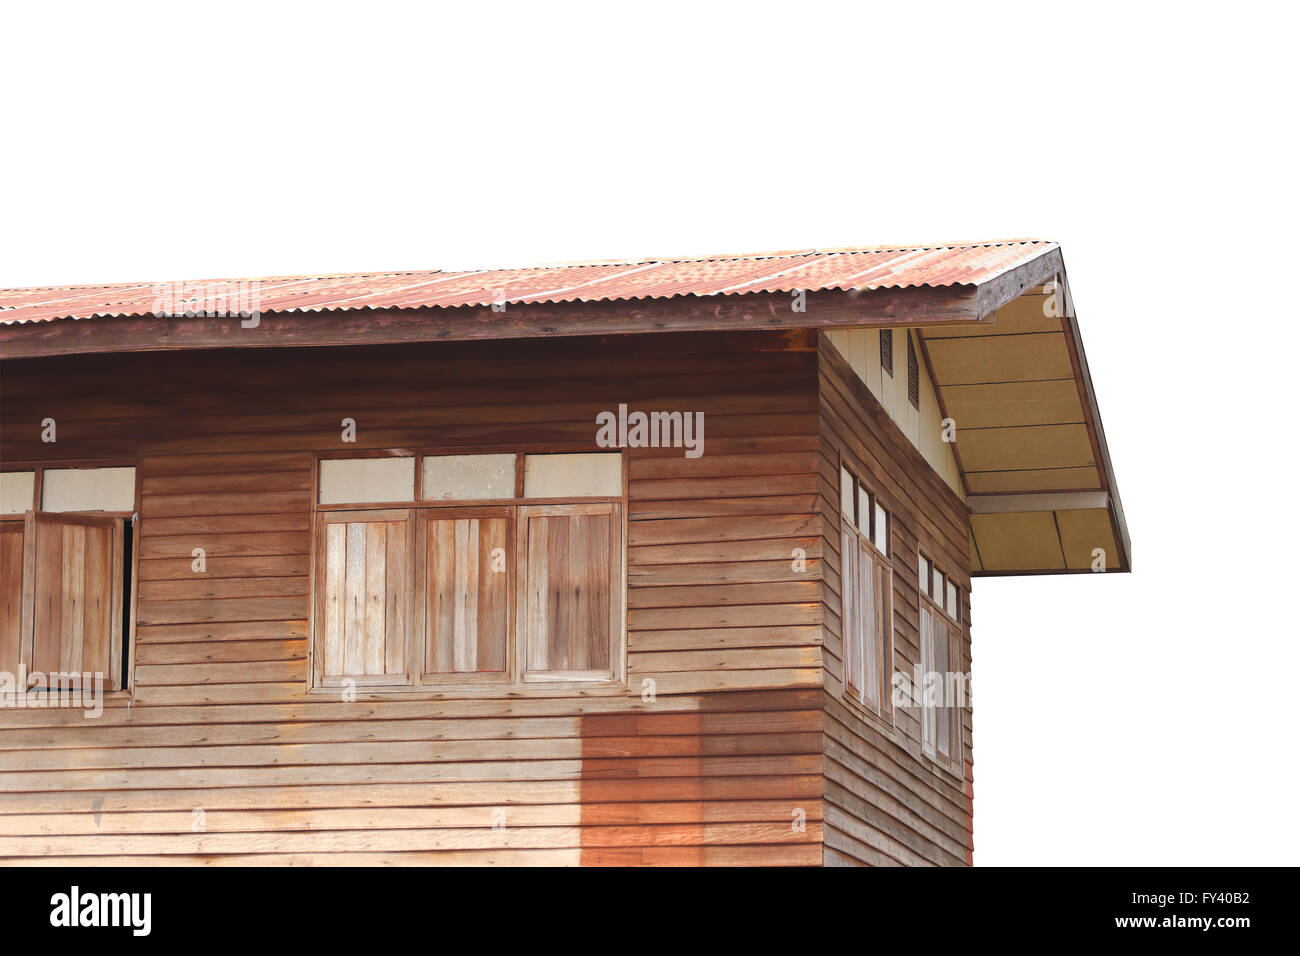 Antigua casa de madera estilo arquitectónico de Tailandia diseño,y trazados de recorte. Foto de stock